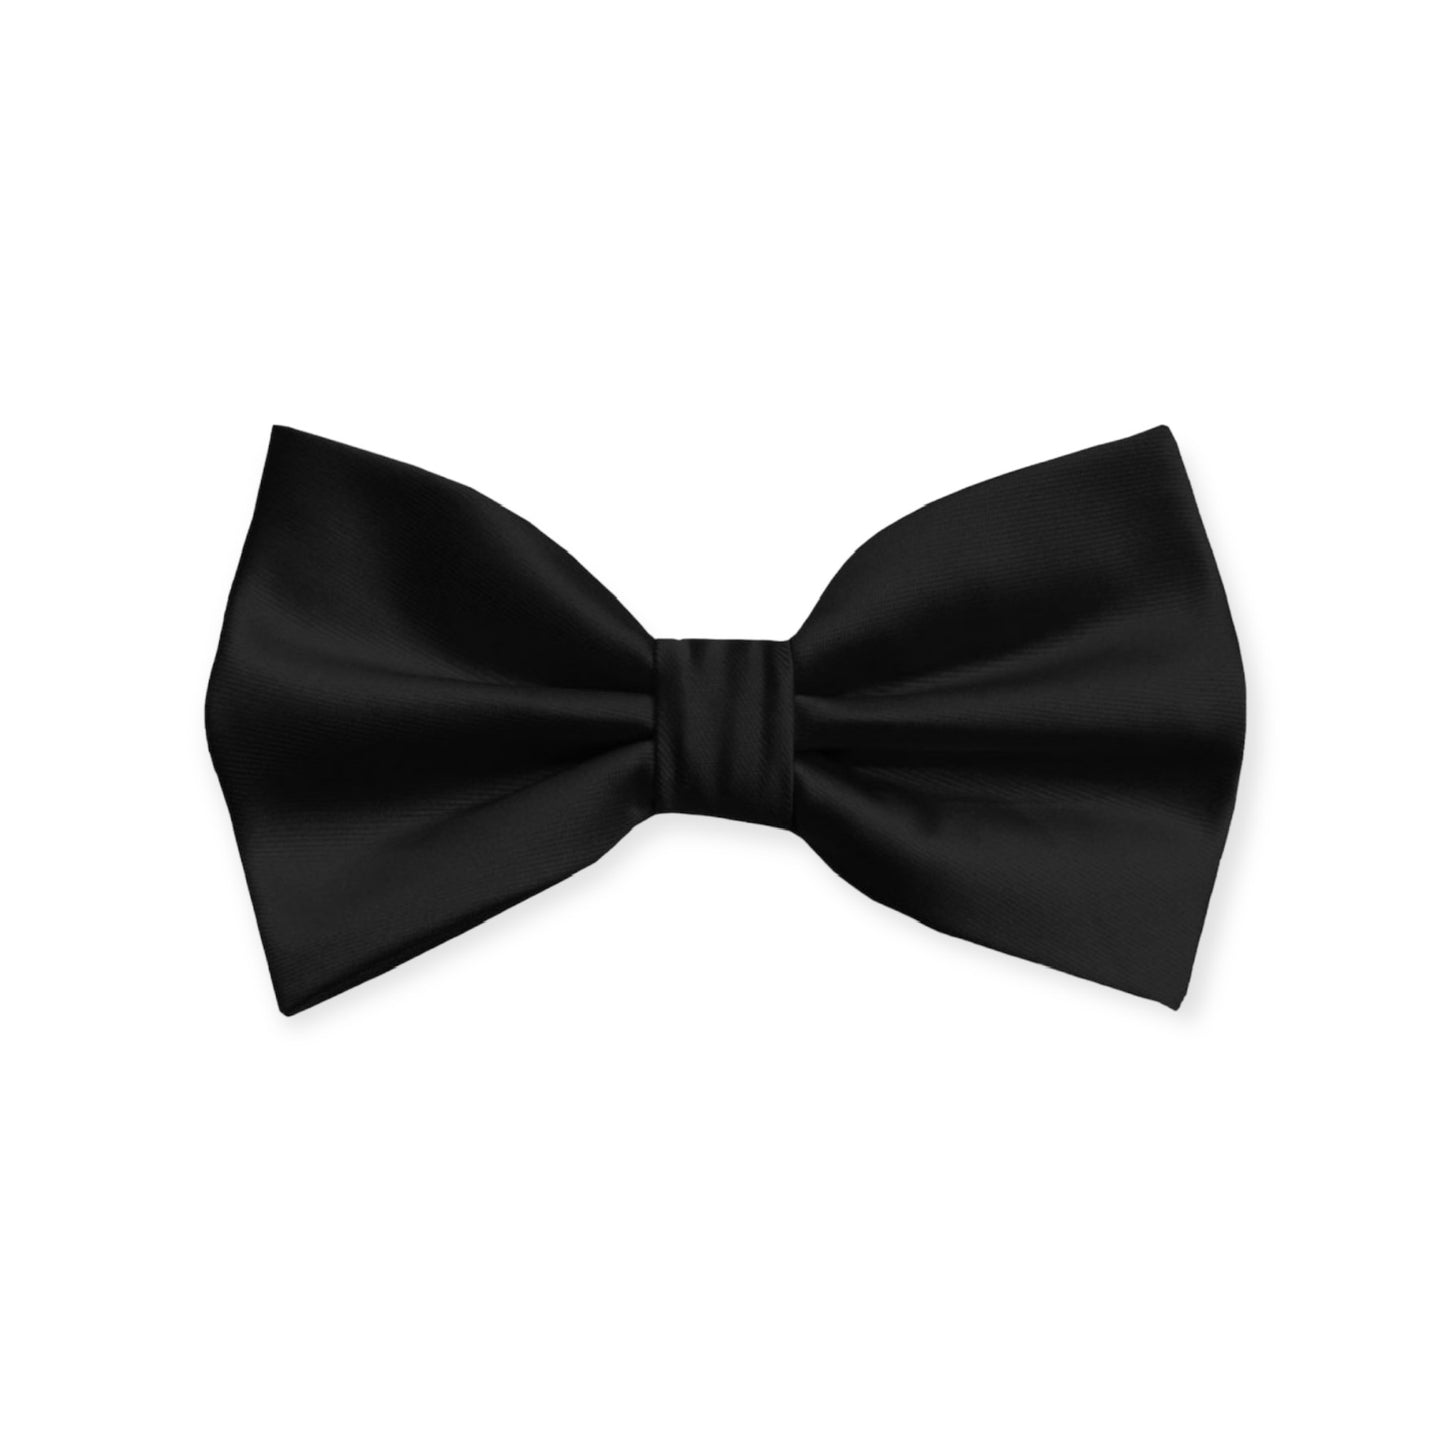 Solid Black Bow Tie